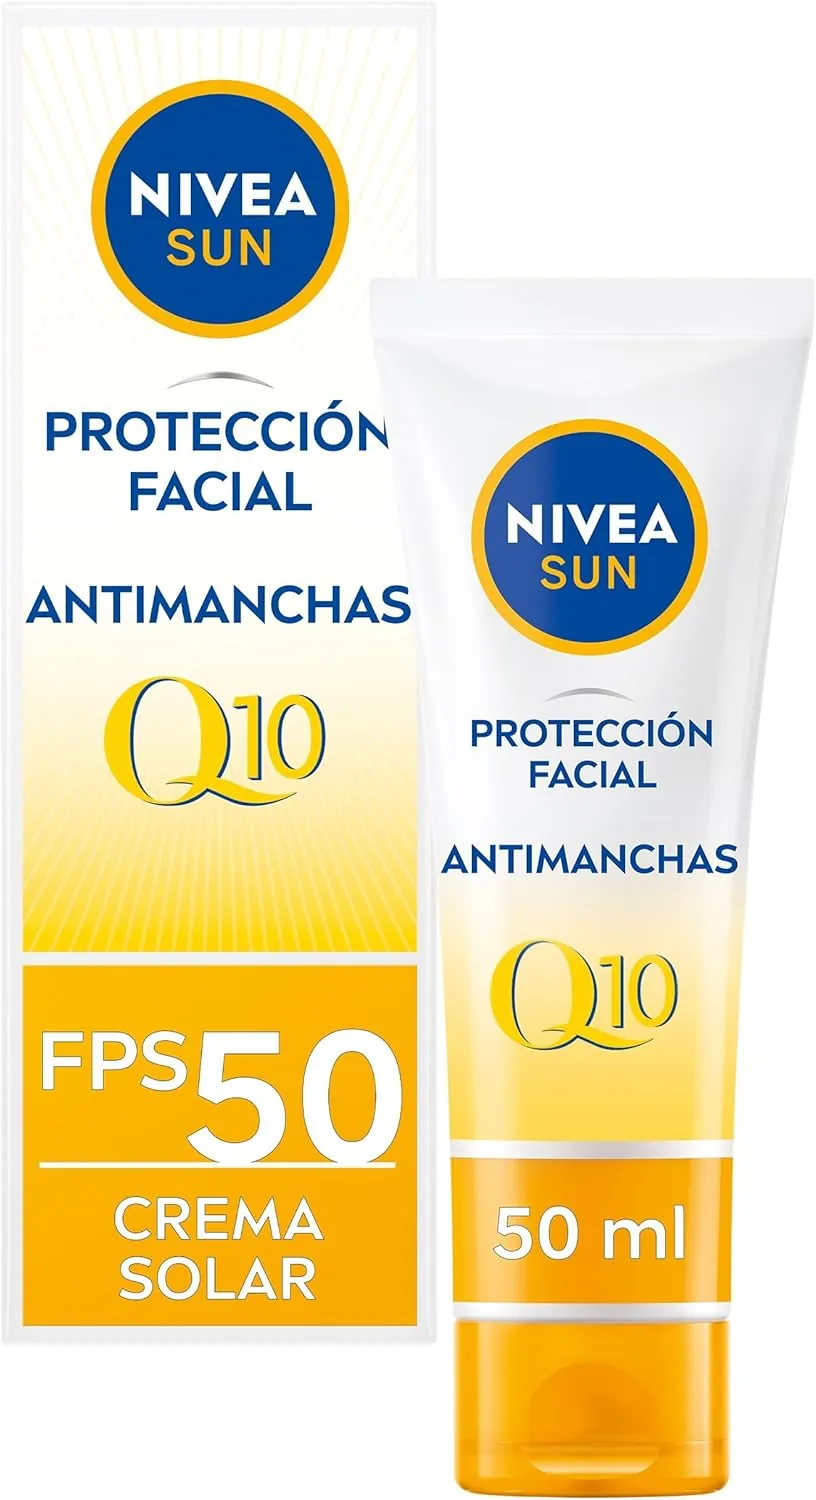 Crema protectora solar NIVEA SUN Protección Facial Antiedad & Antimanchas FP50